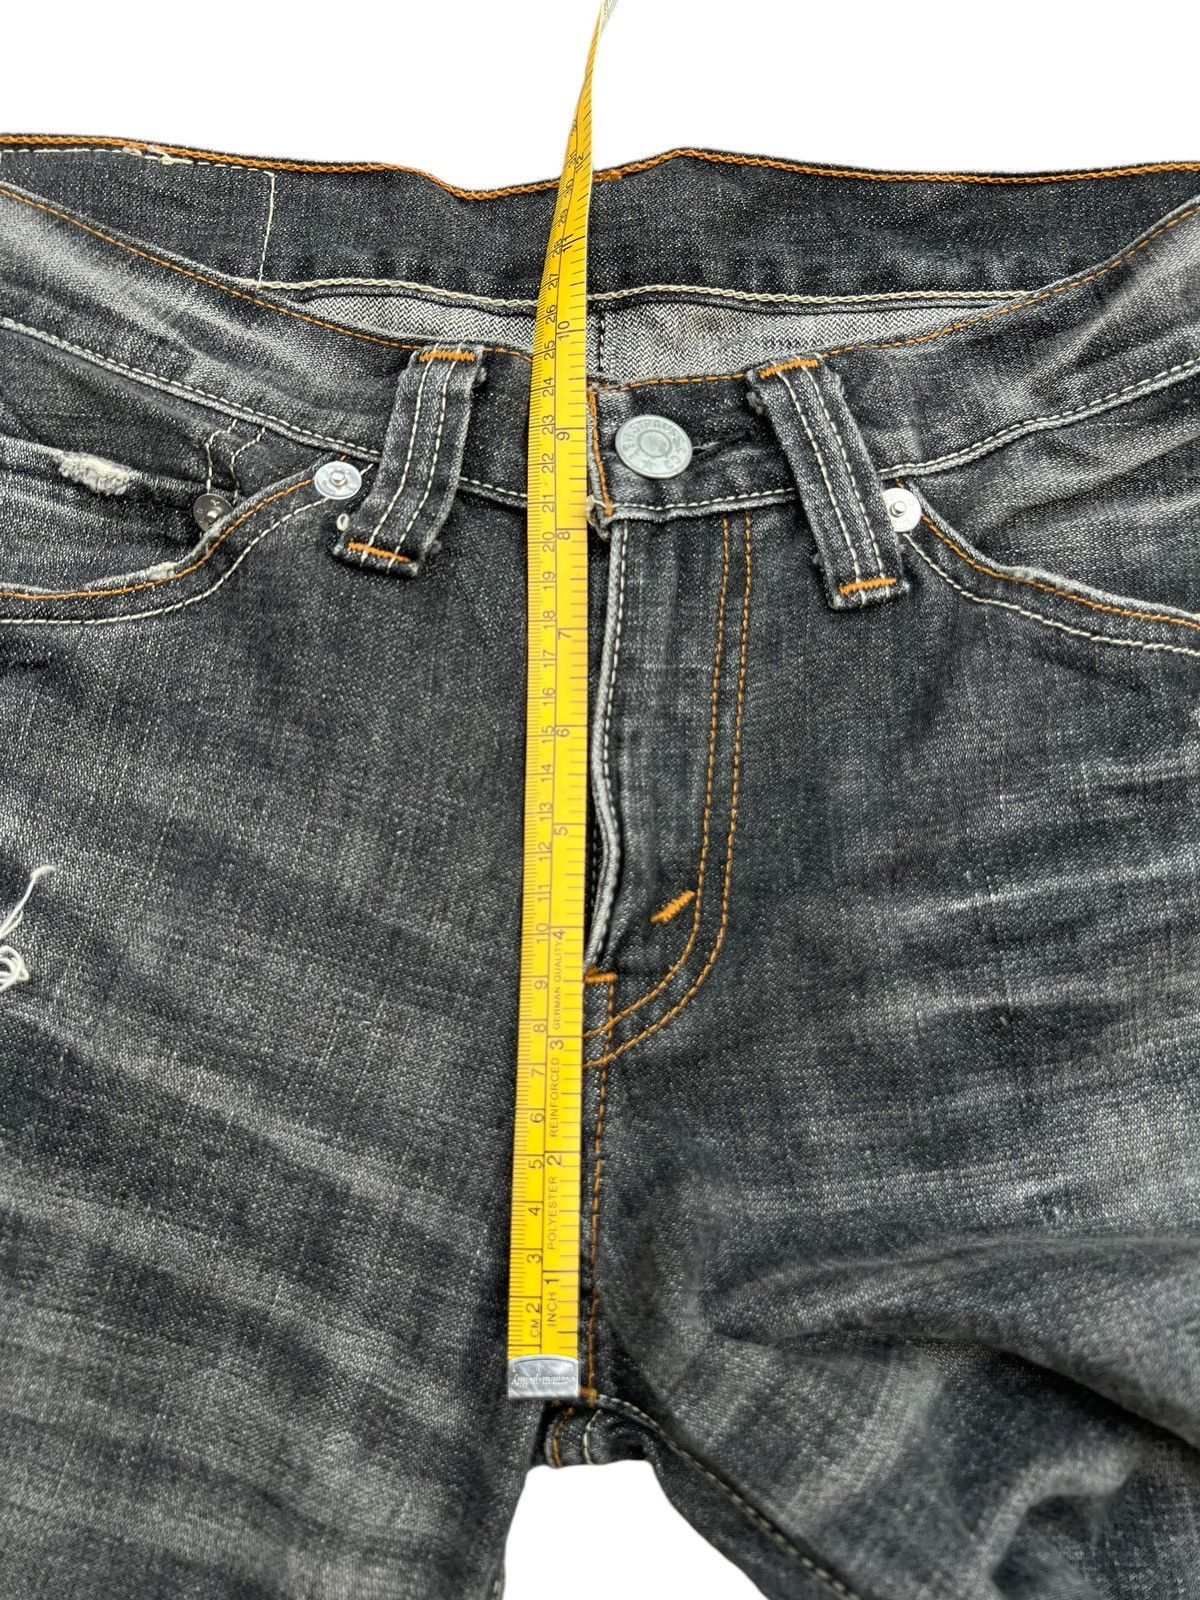 Levis 708 Distressed Paint Lowrise Flare Denim Jeans 33x34 - 14